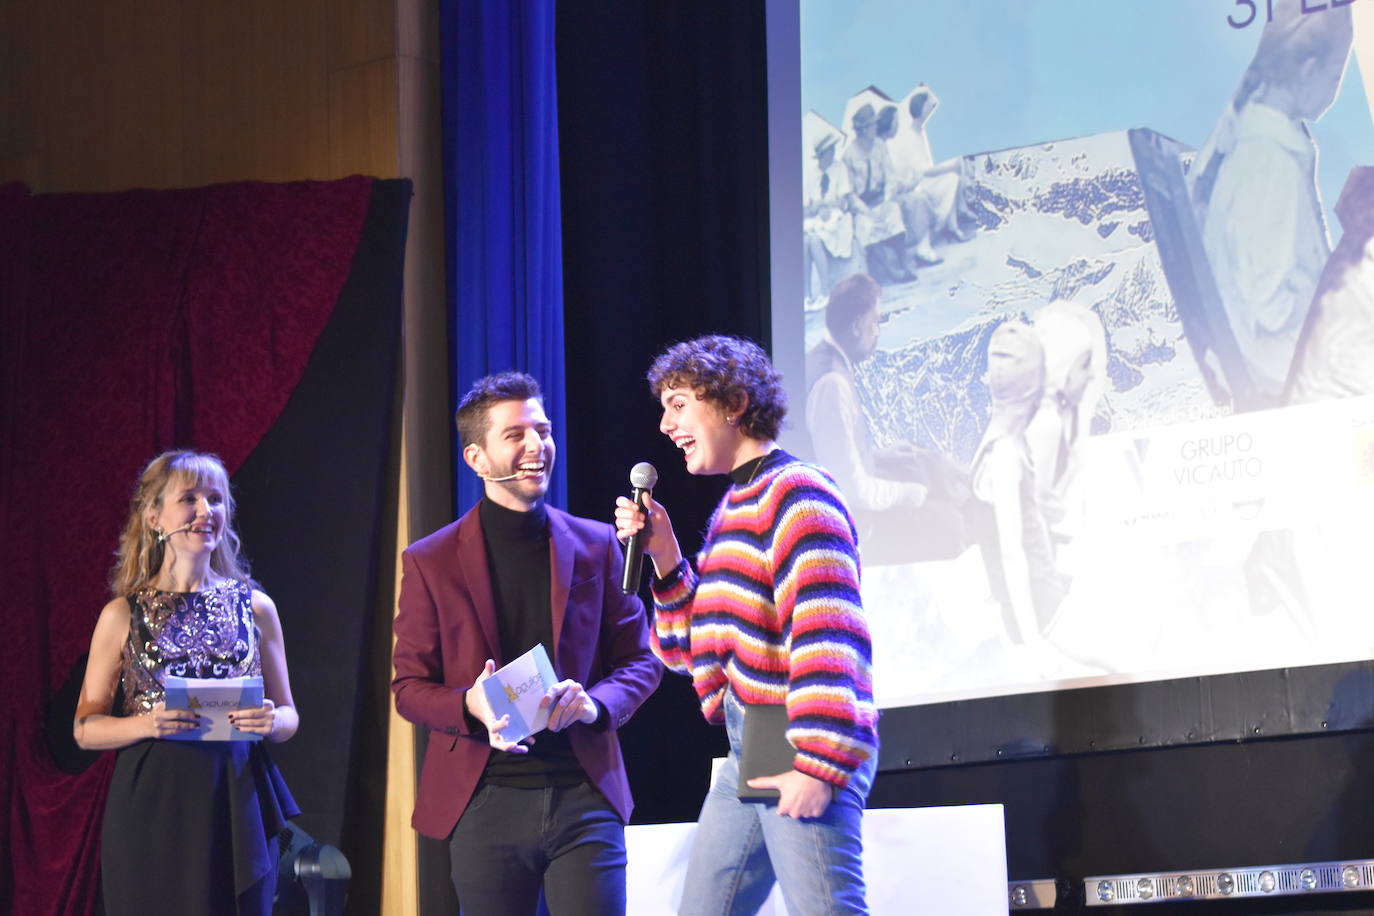 El cortometraje 'The physics of sorrow', del director búlgaro Theodore Ushev, resultó ayer vencedor en la trigésima primera edición del Aguilar Film Festival. 